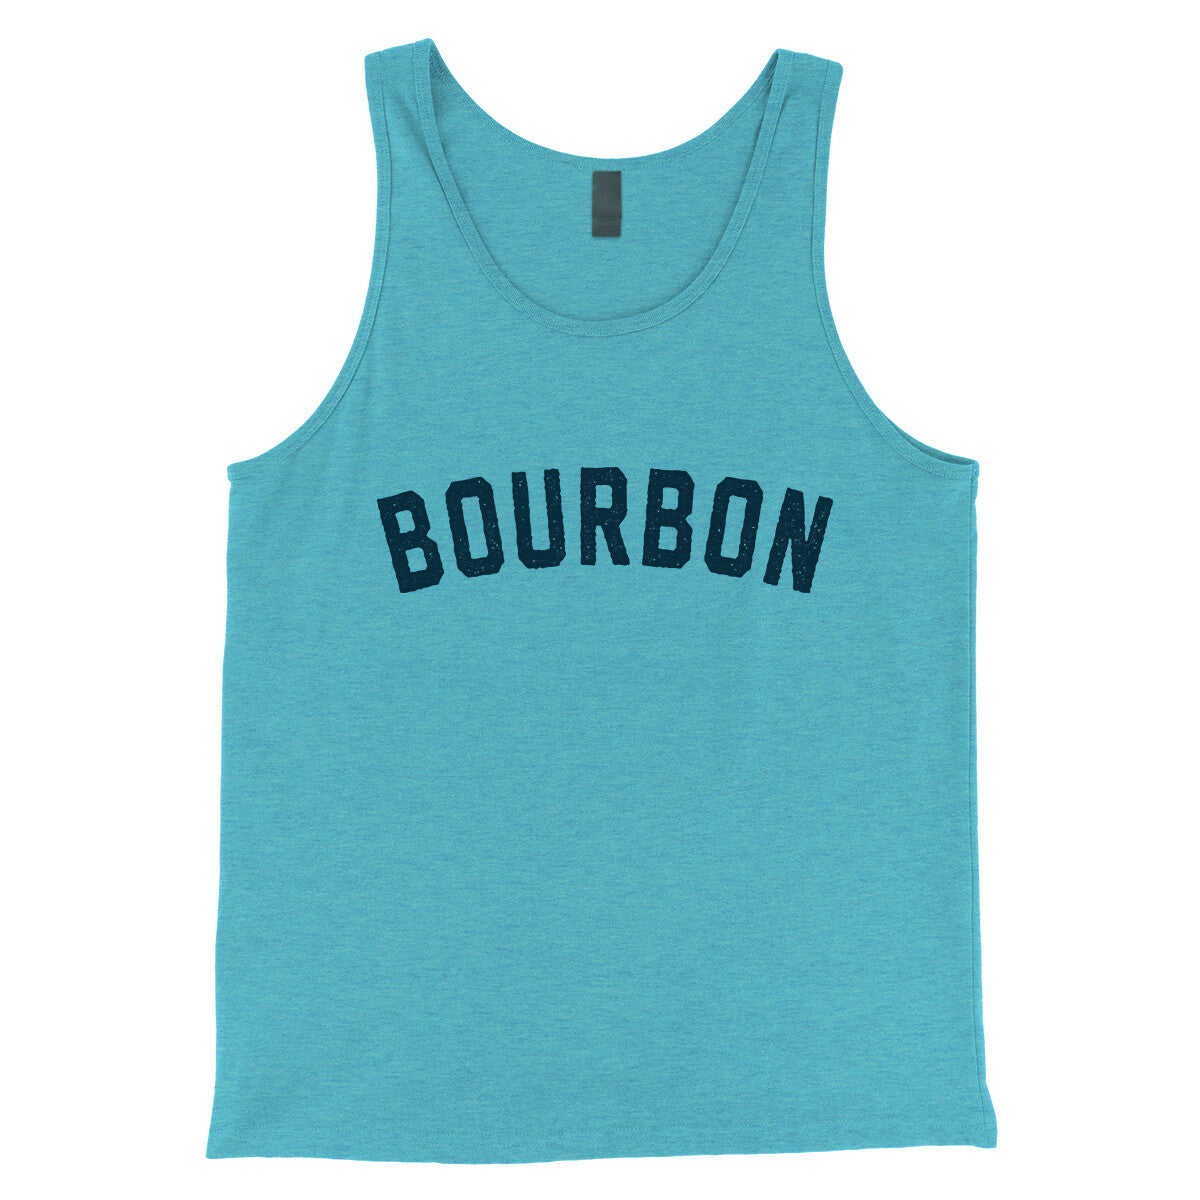 Bourbon in Aqua Triblend Color